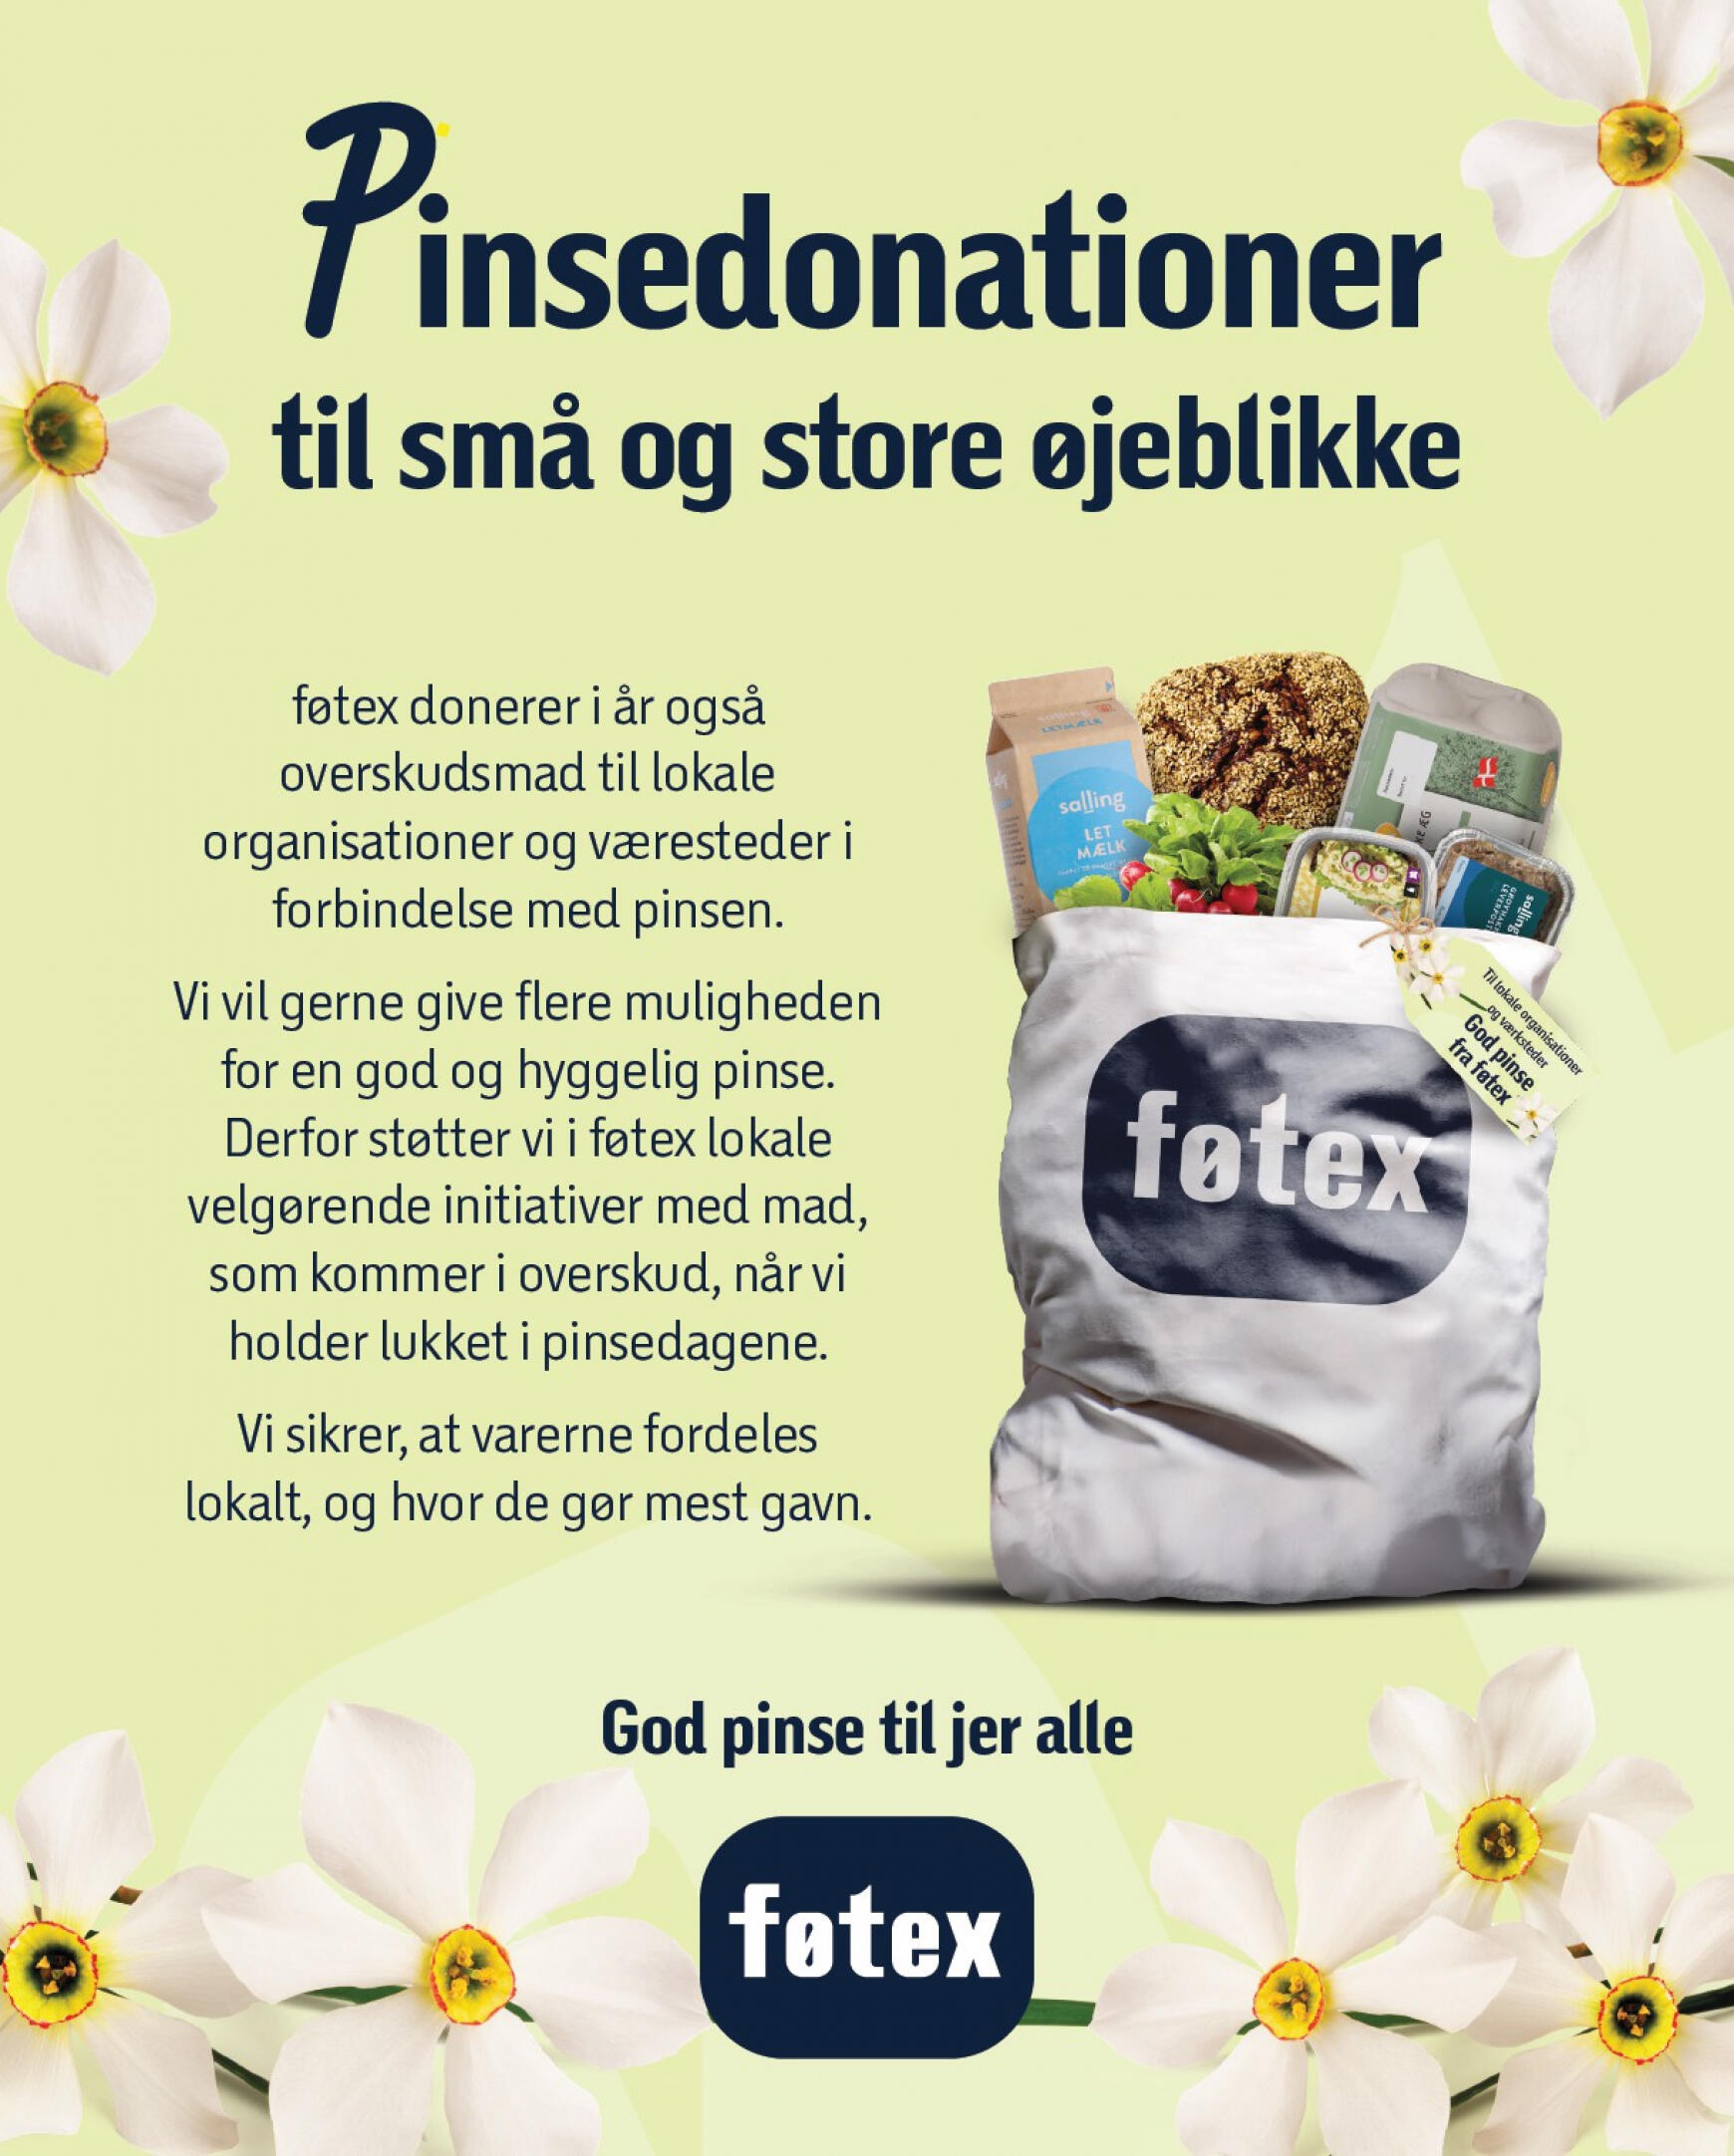 fotex - Føtex - Gældende avis nuværende 10.05. tilbudsavis - 23.05. - page: 12